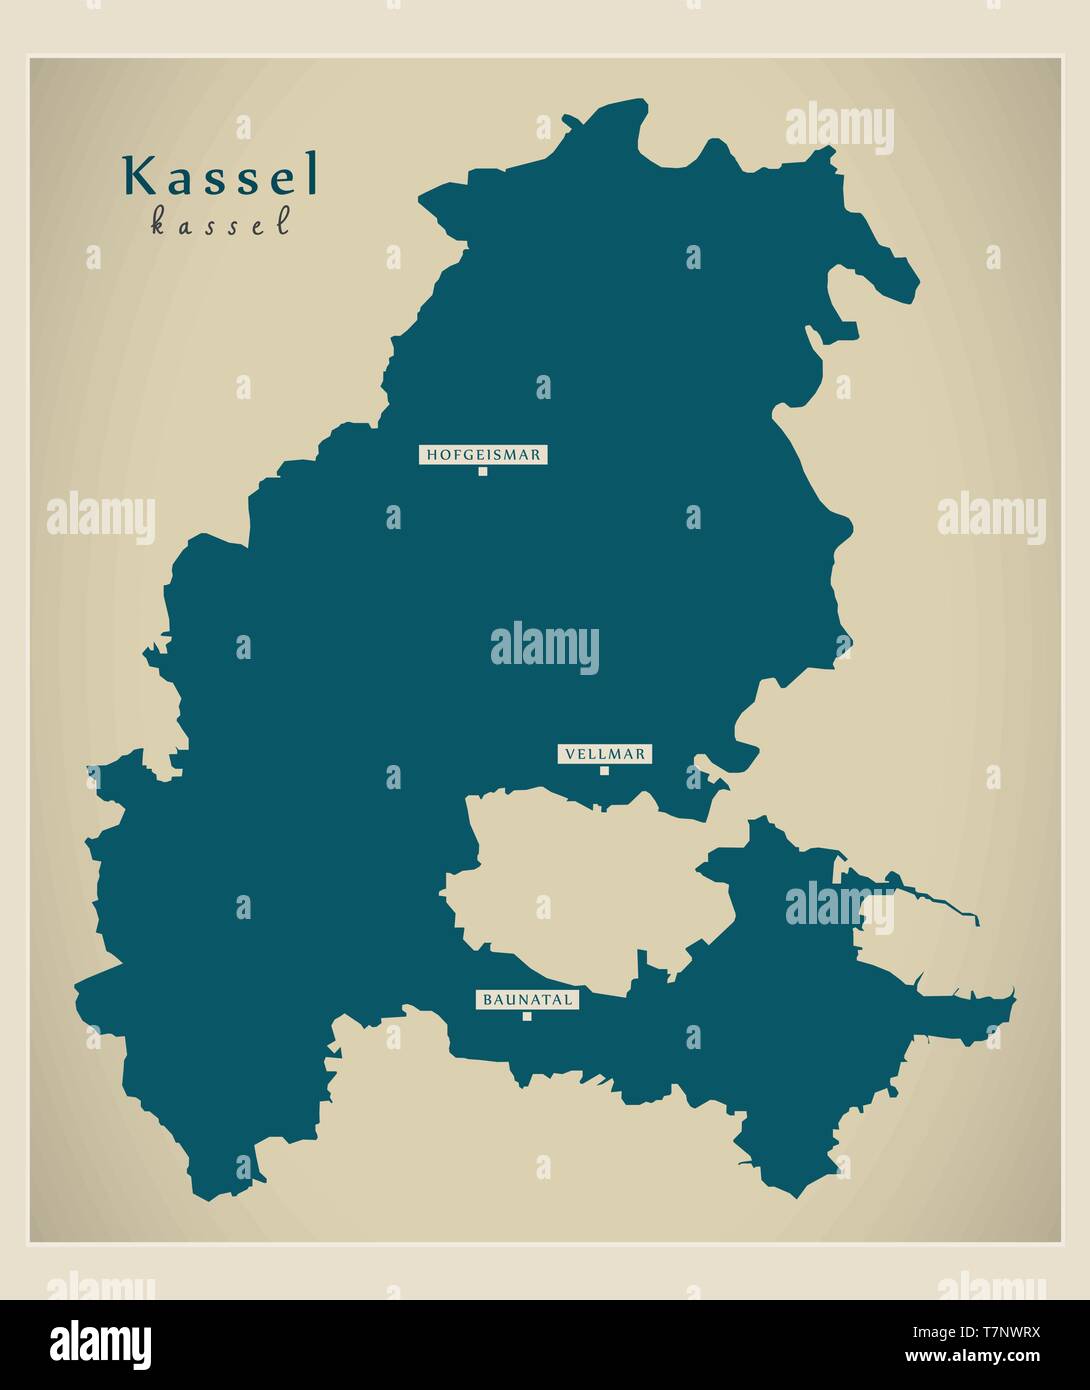 Mappa moderno - Kassel contea di Assia DE Illustrazione Vettoriale